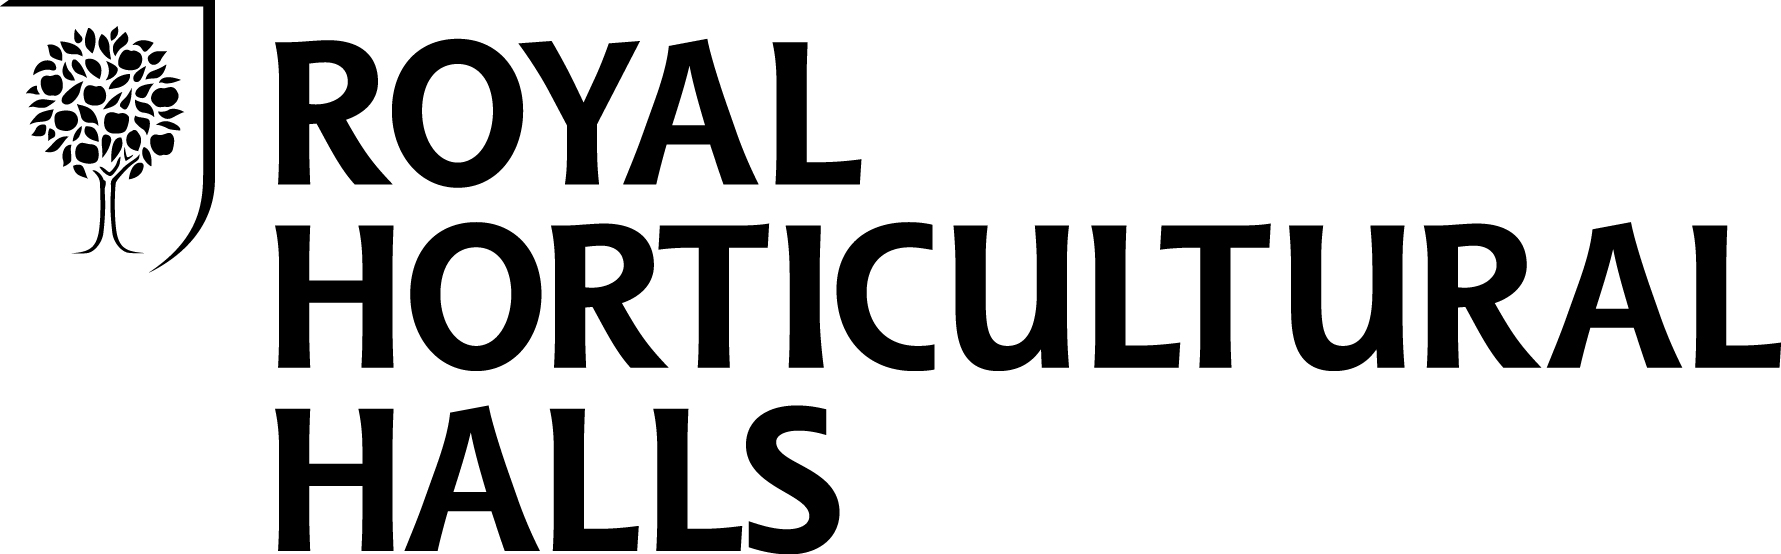 Royal Horticultural Halls